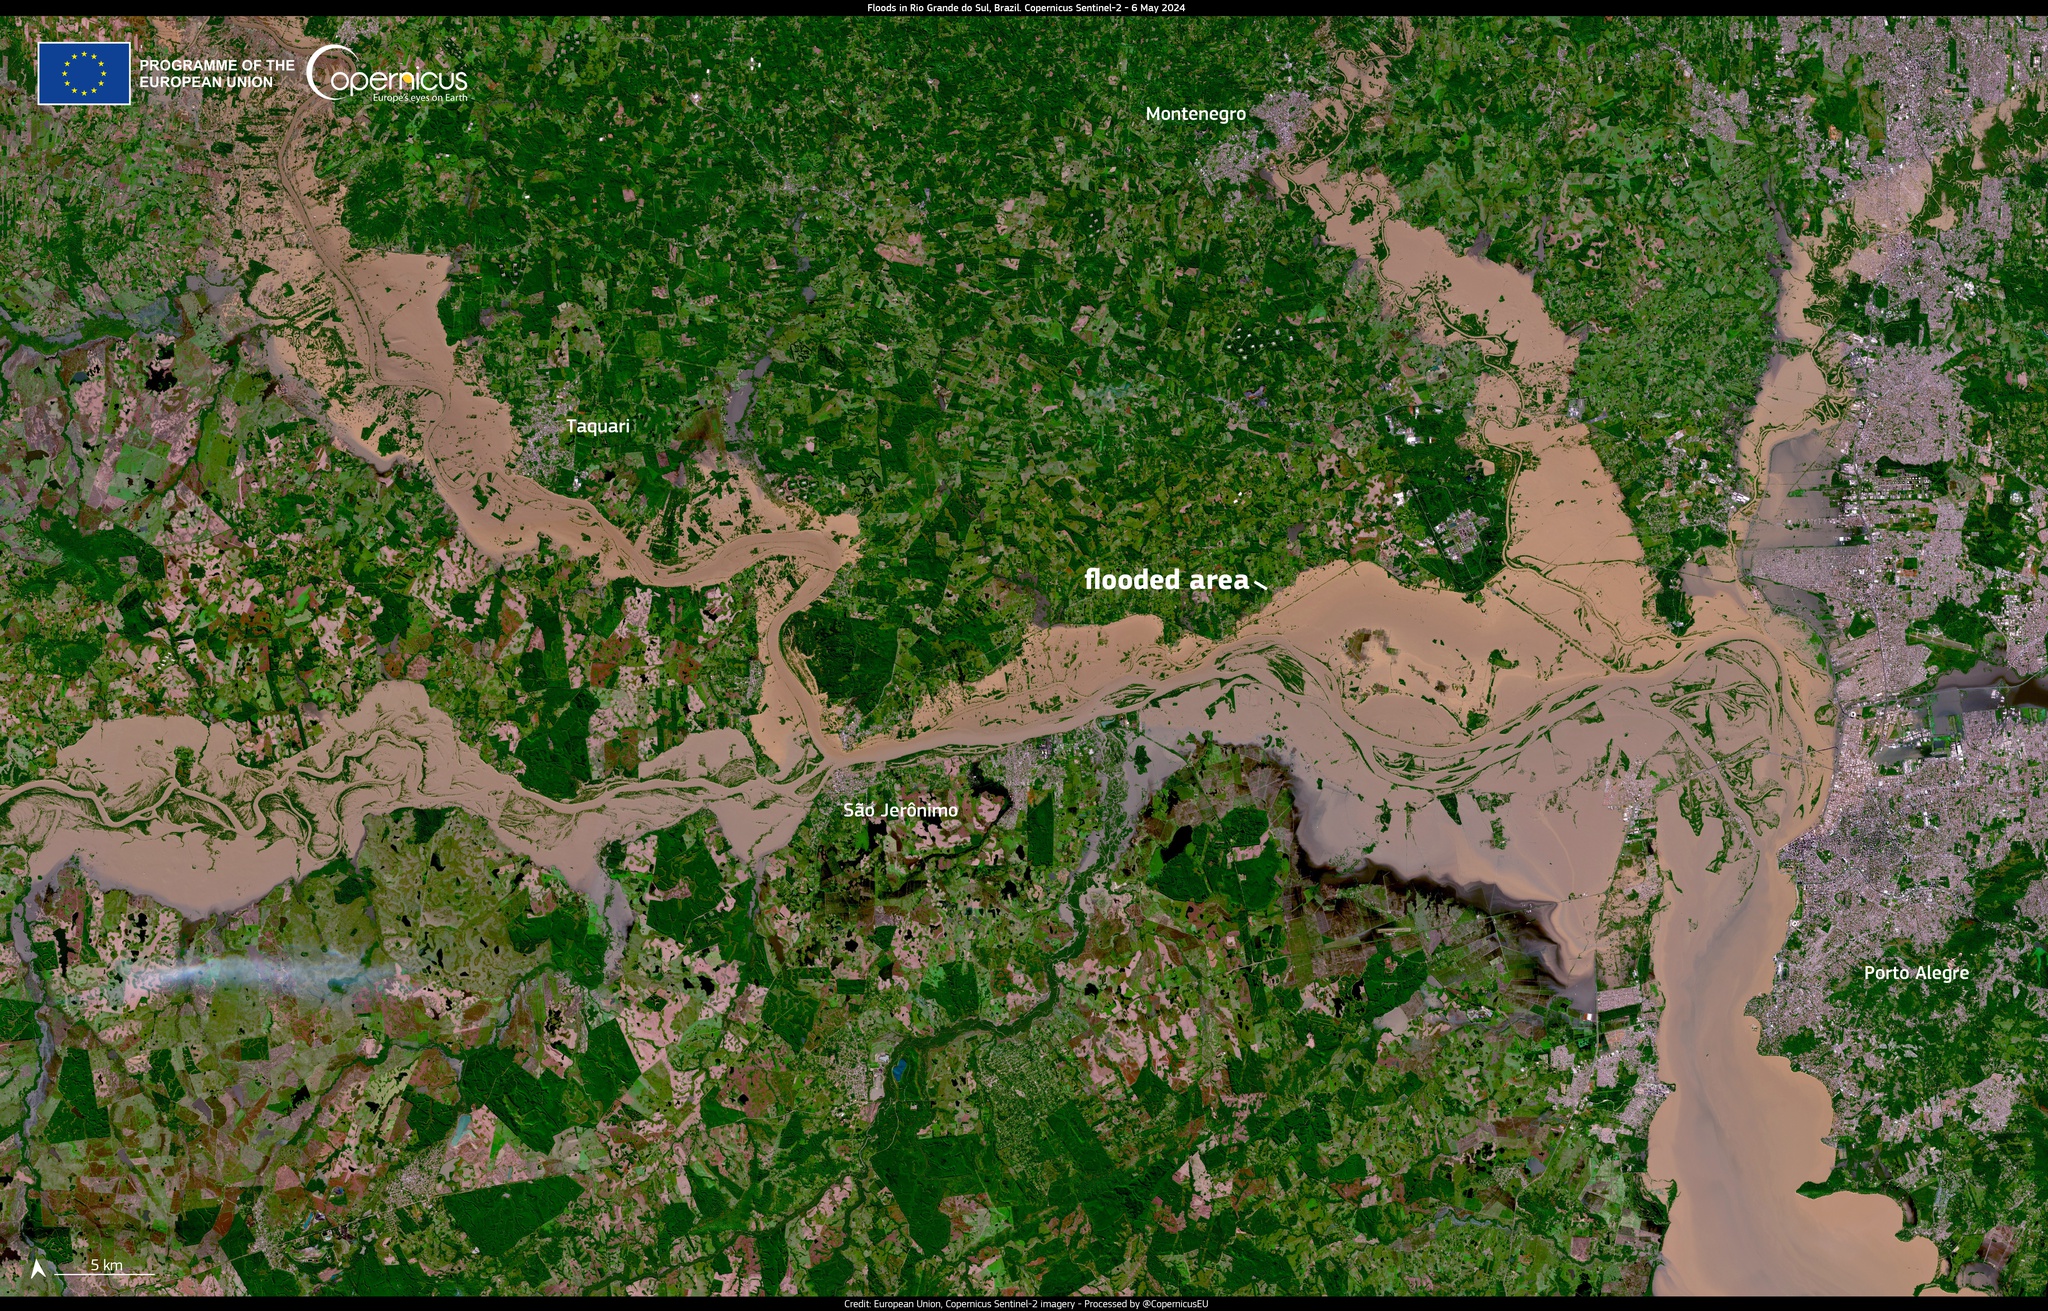 Satellitenbild zeigt die Verwüstung durch Überschwemmungen in Brasilien  Brasilien